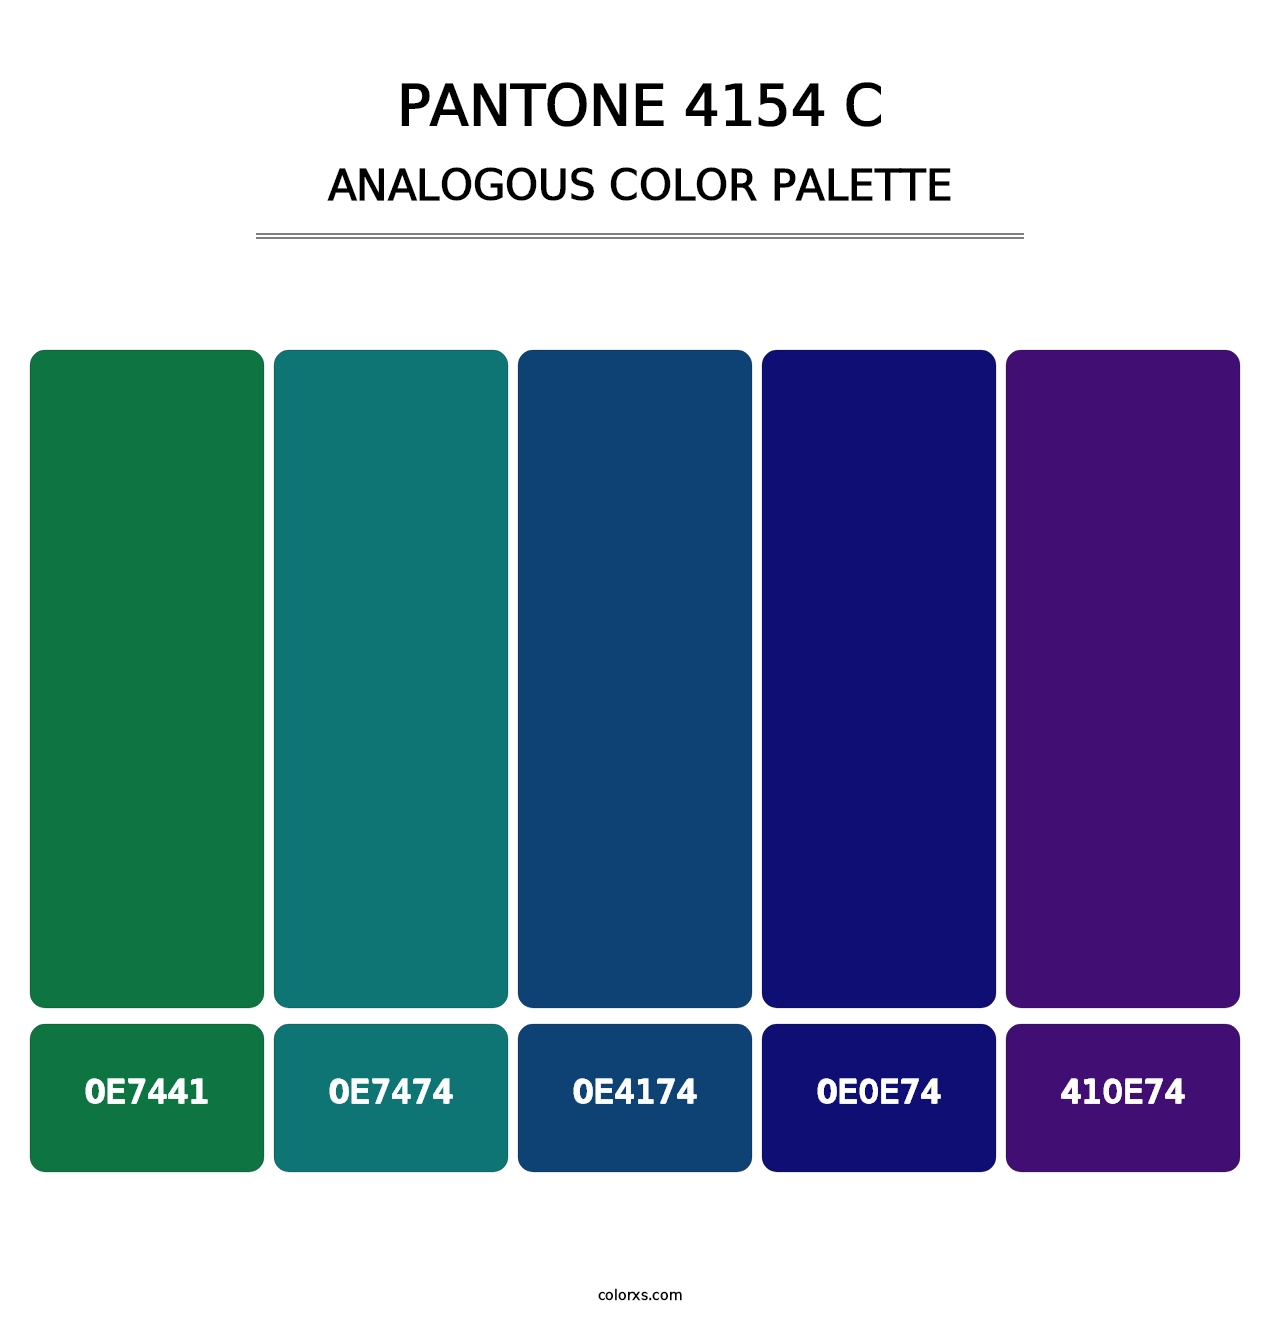 PANTONE 4154 C - Analogous Color Palette